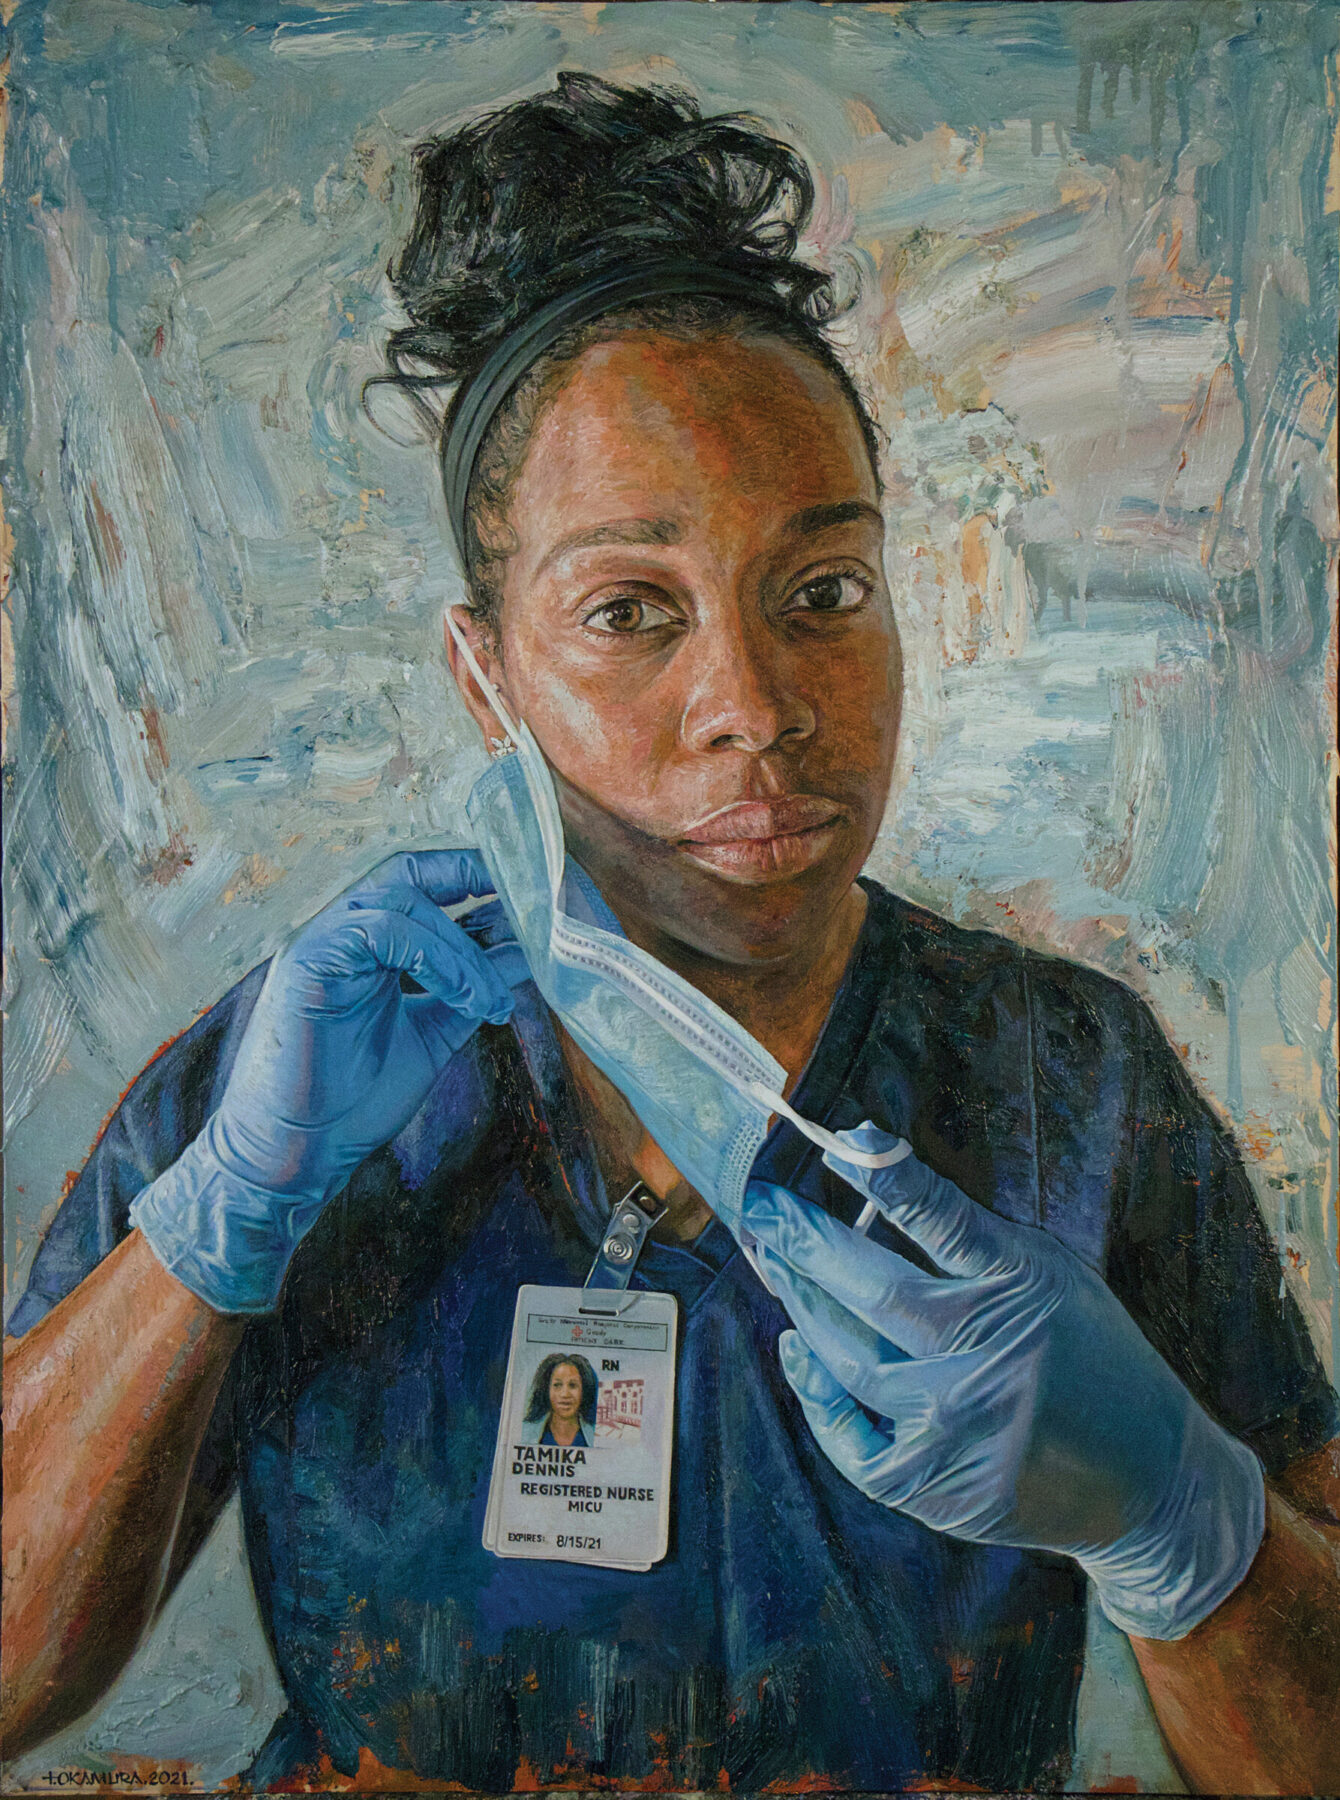 Tim Okamura, "Nurse Tamika" (2021), oil on wood panel, 24 x 30 in.